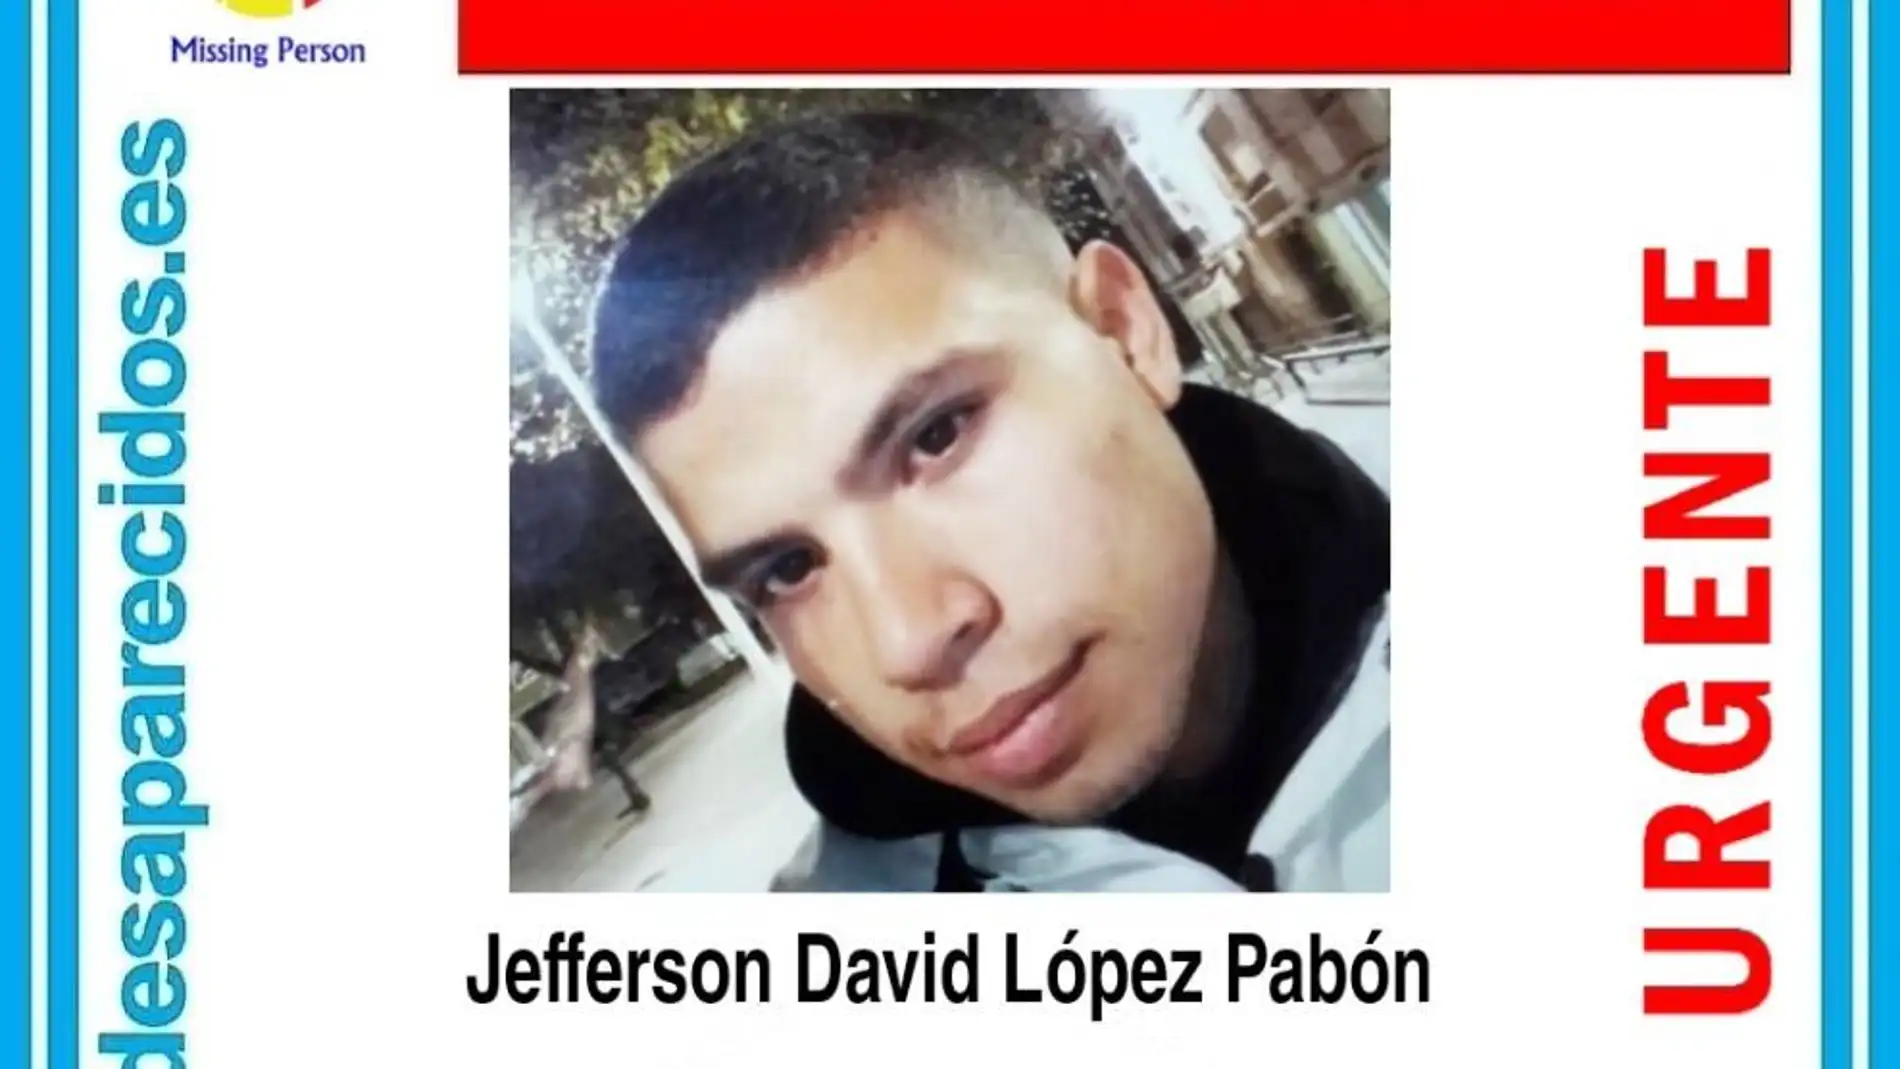 Se busca a Jefferson David, un joven de 24 años desaparecido en Toledo